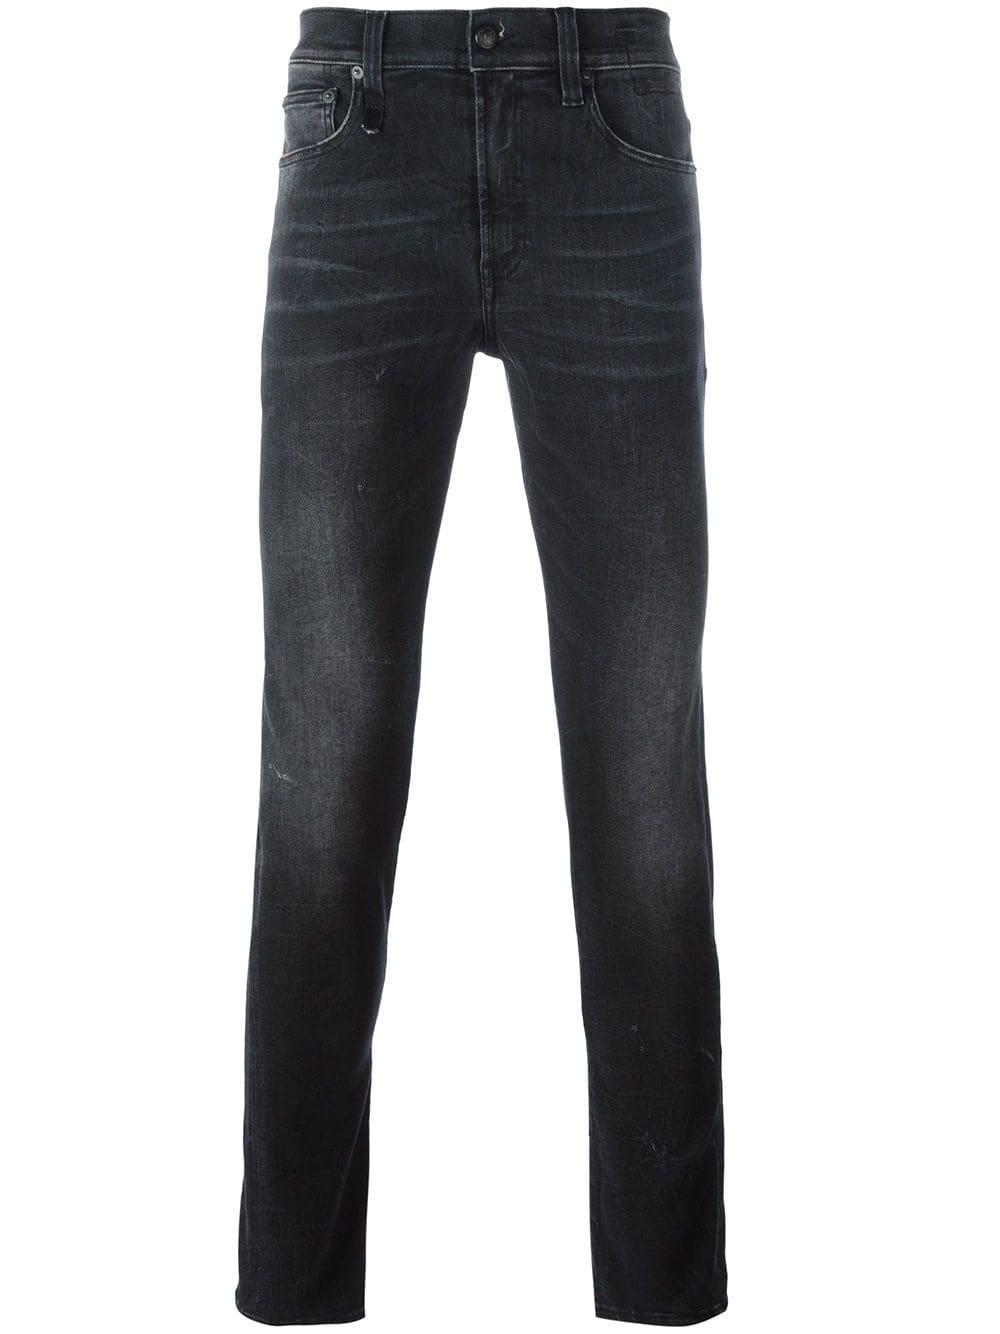 R13 Denim 'skate' Skinny Jeans in Black for Men - Save 73% - Lyst